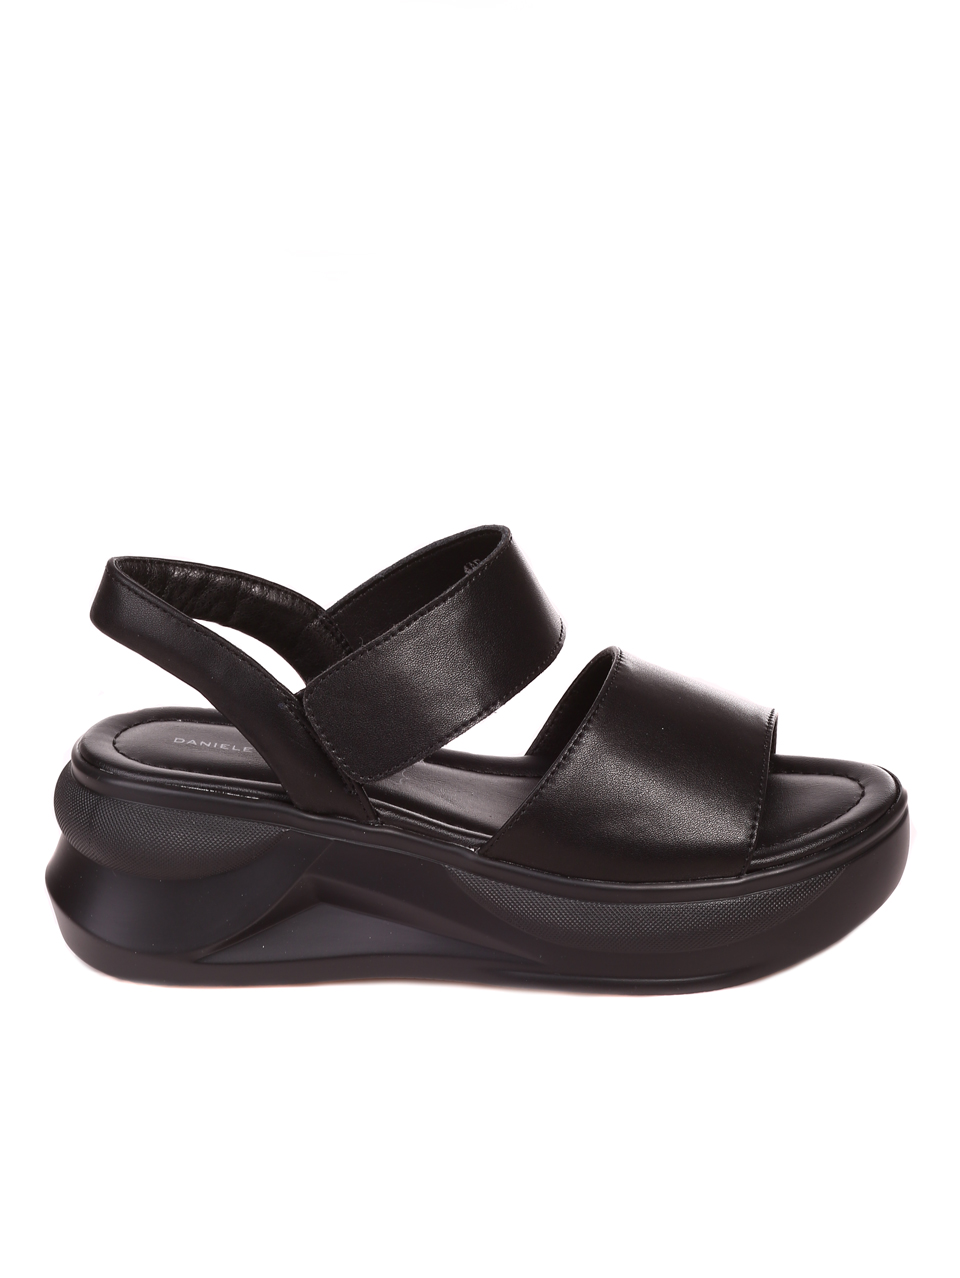 Ежедневни дамски сандали на платформа от естествена кожа 4AF-22188 black (24168)